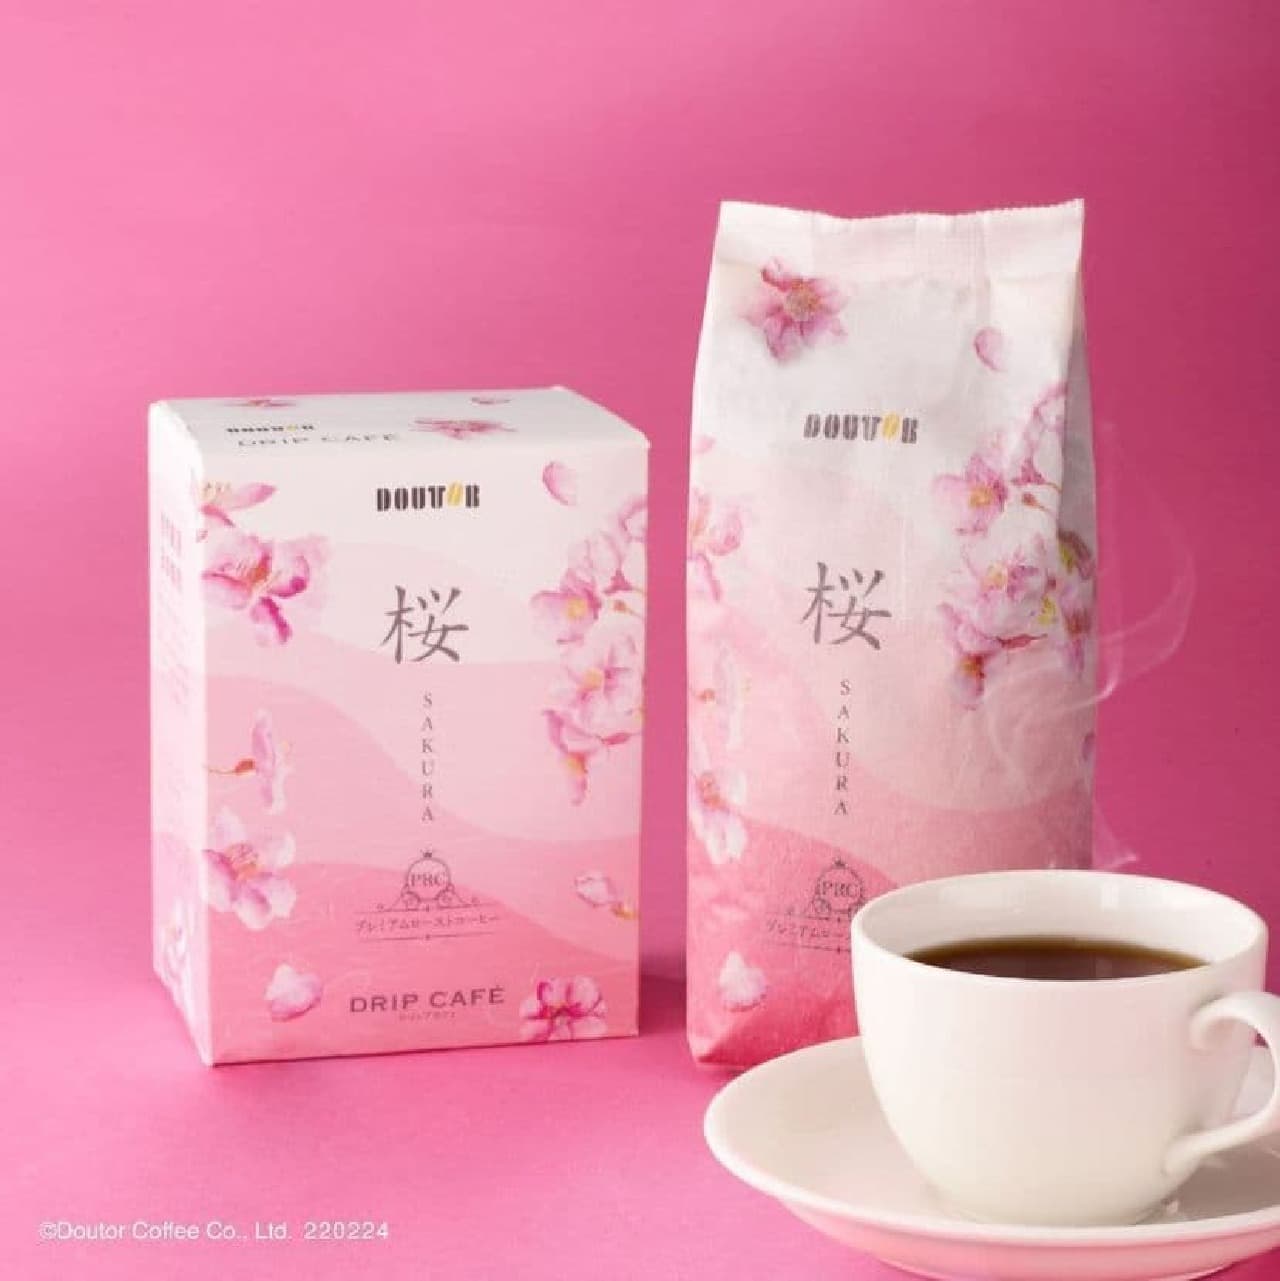 Doutor "Premium Roast Coffee Sakura